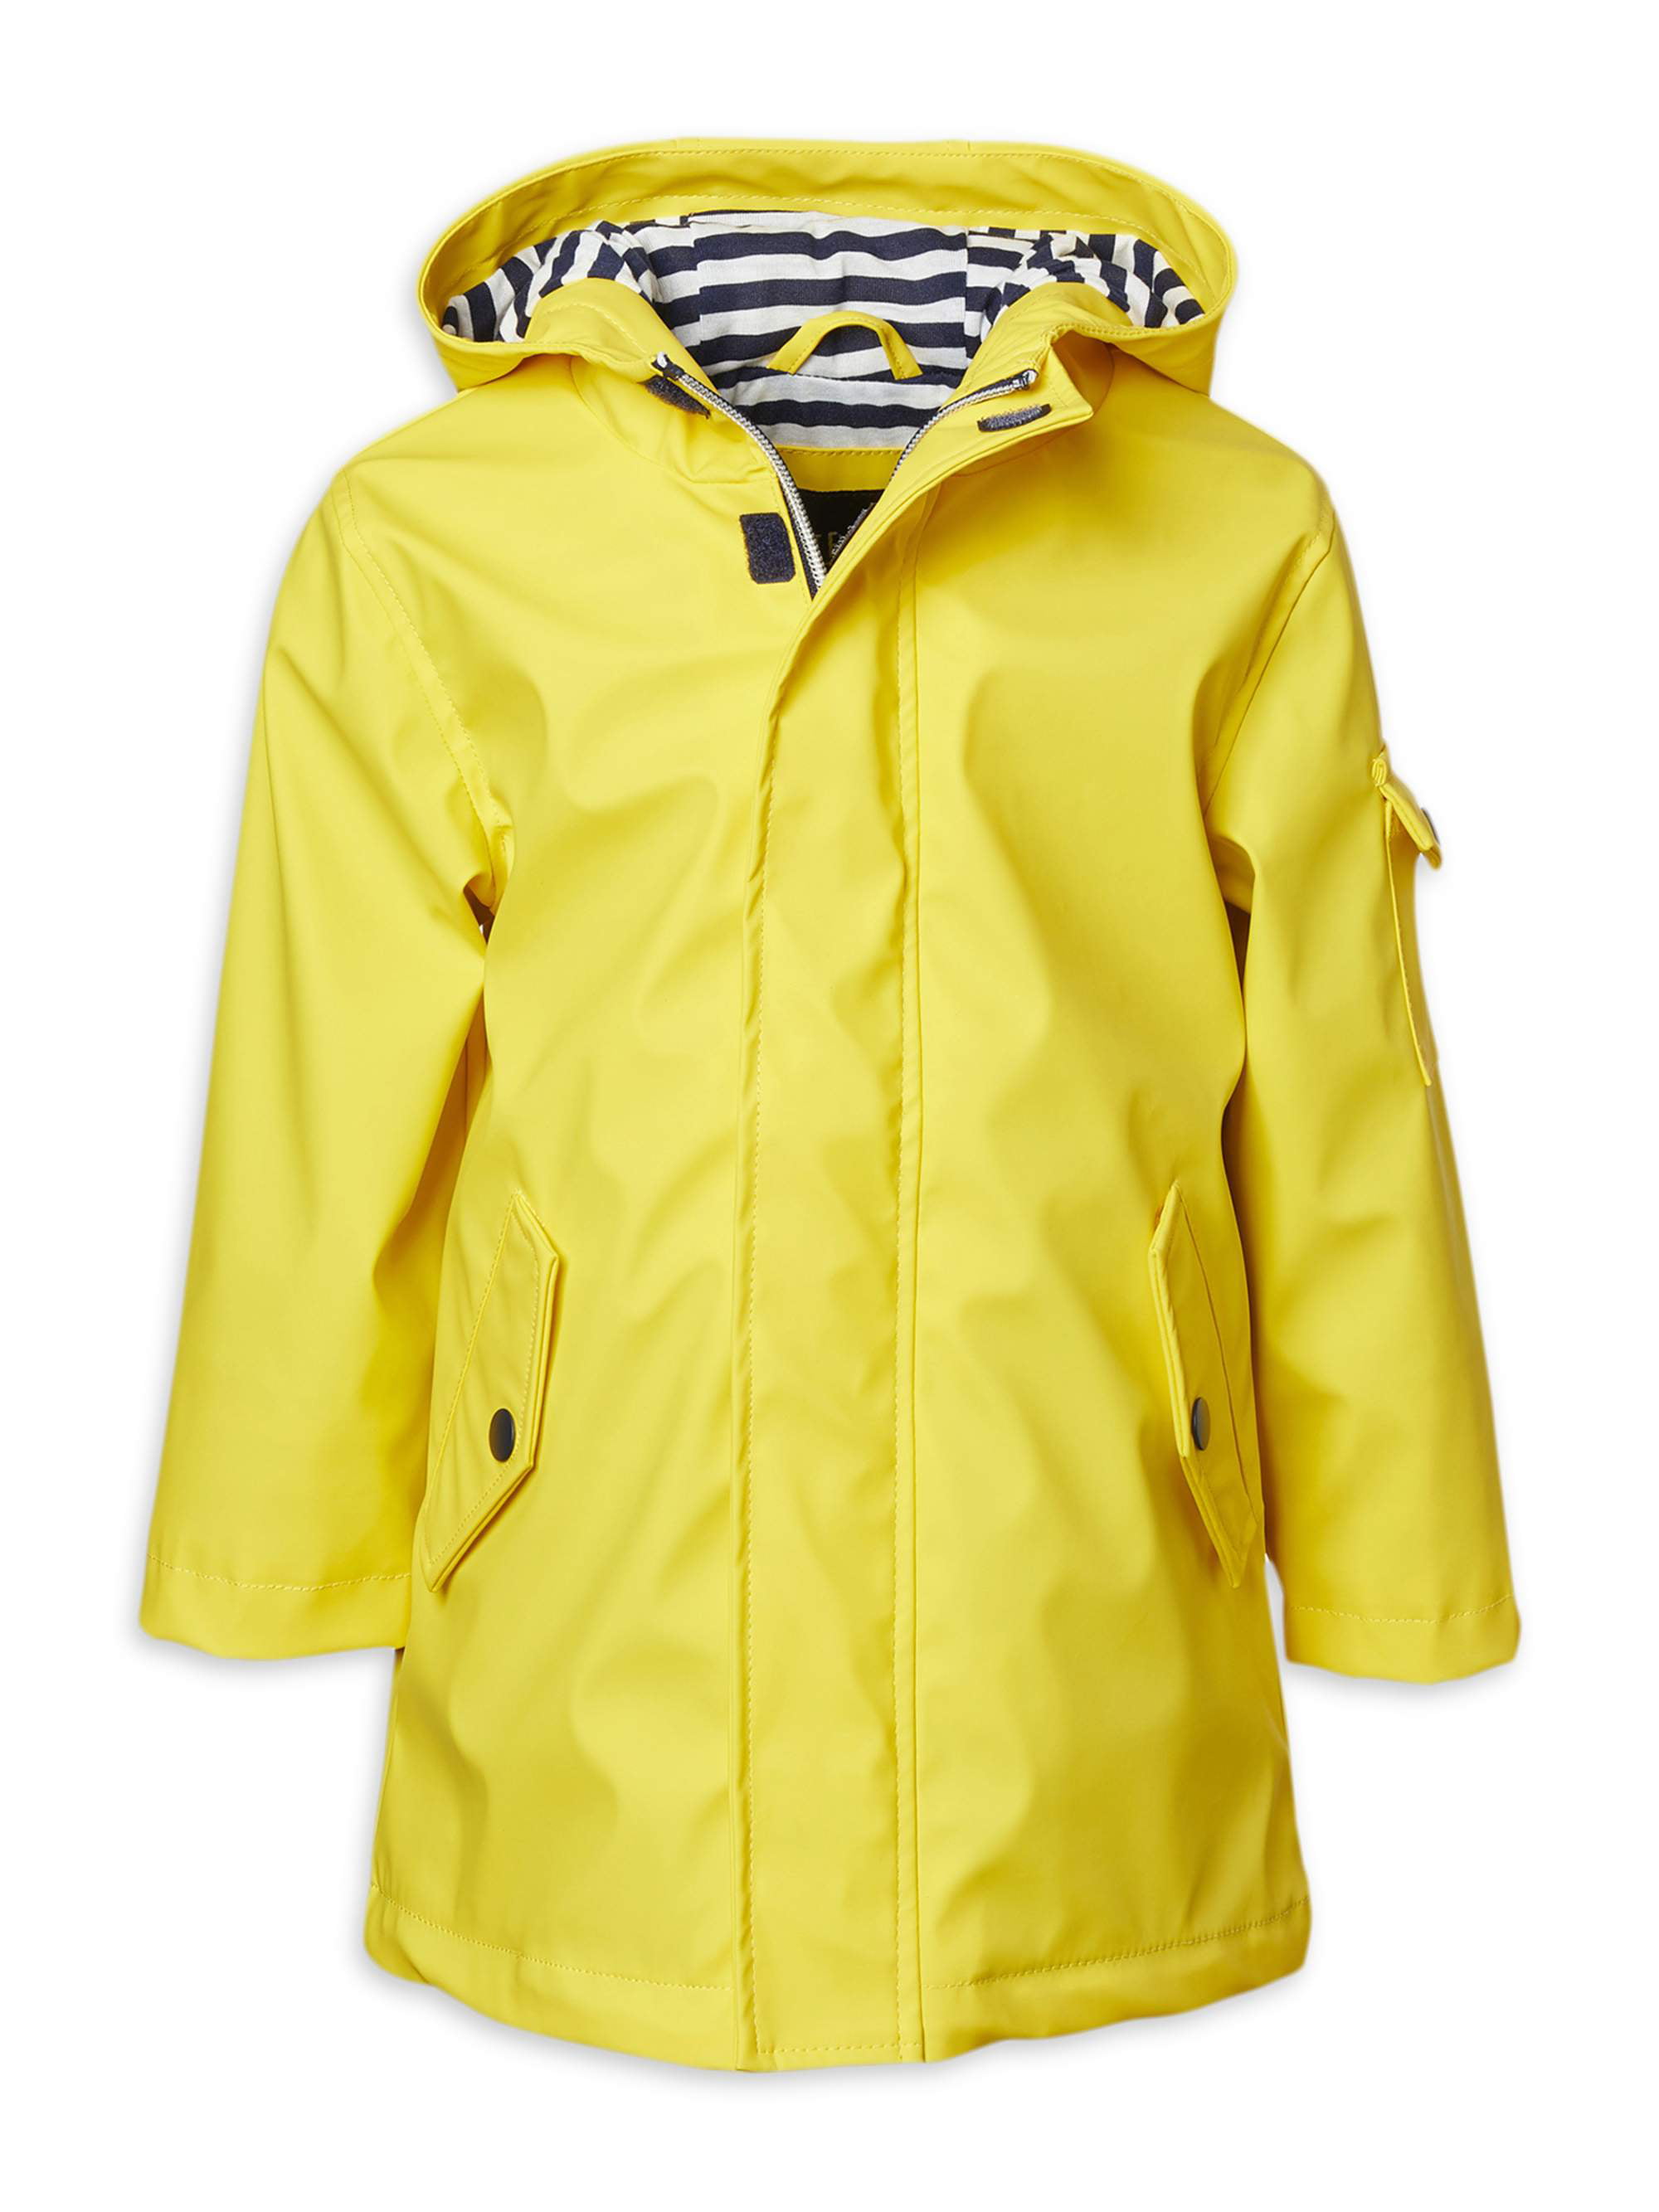 iXtreme Boys' Jacket Lightweight Waterproof Raincoat with Hood 